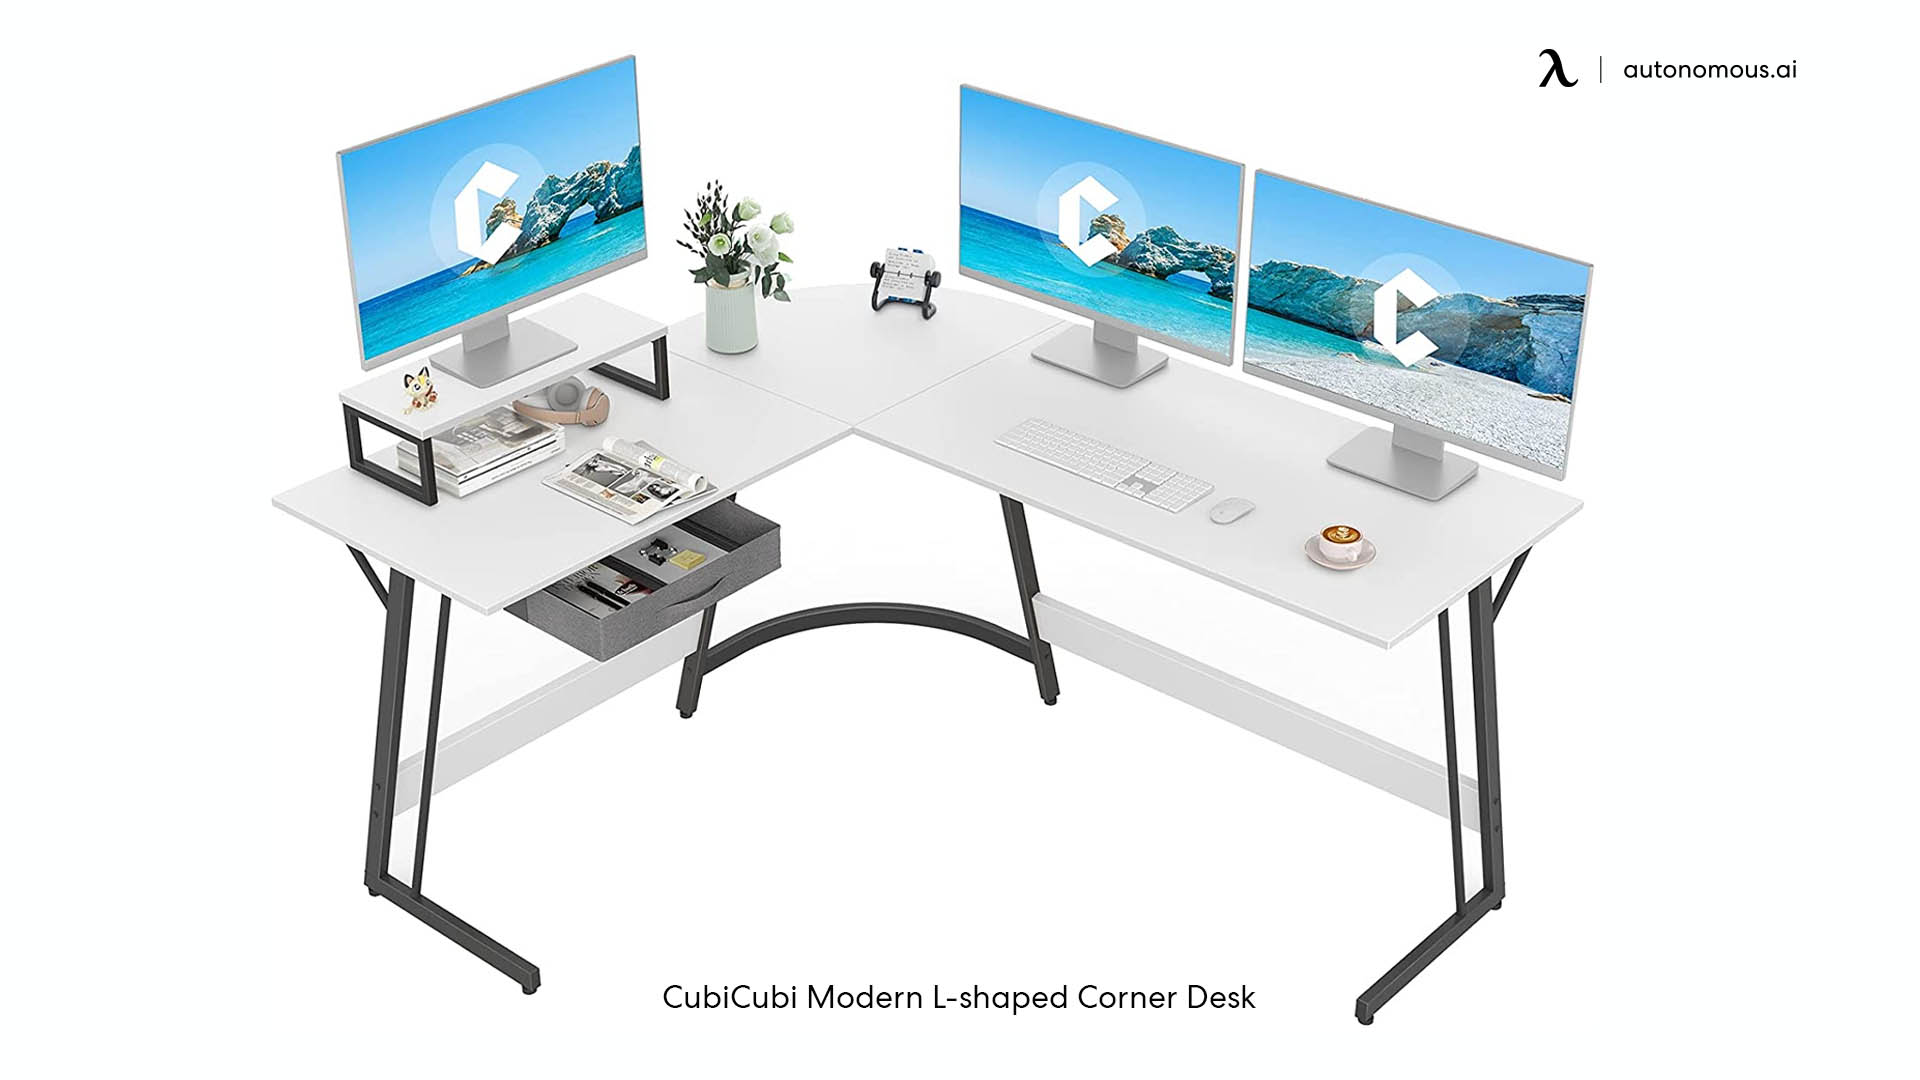 CubiCubi Modern L-shaped Corner Desk